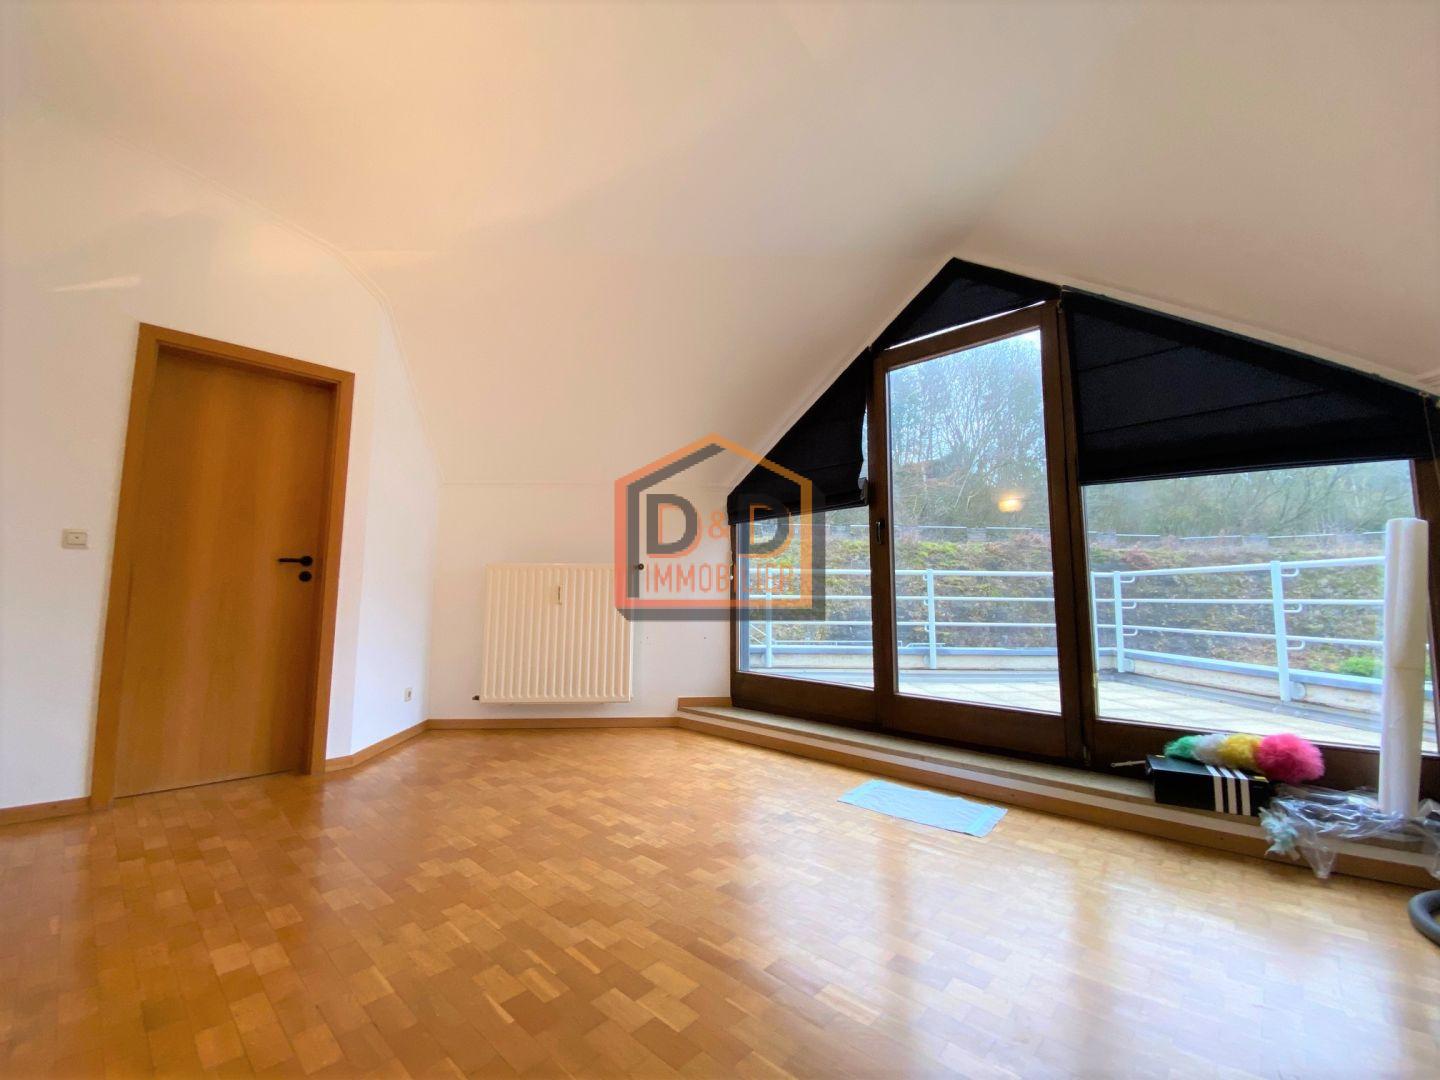 Appartement à Howald, 120 m², 2 chambres, 2 salles de bain, 1 garage, 2 000 €/mois